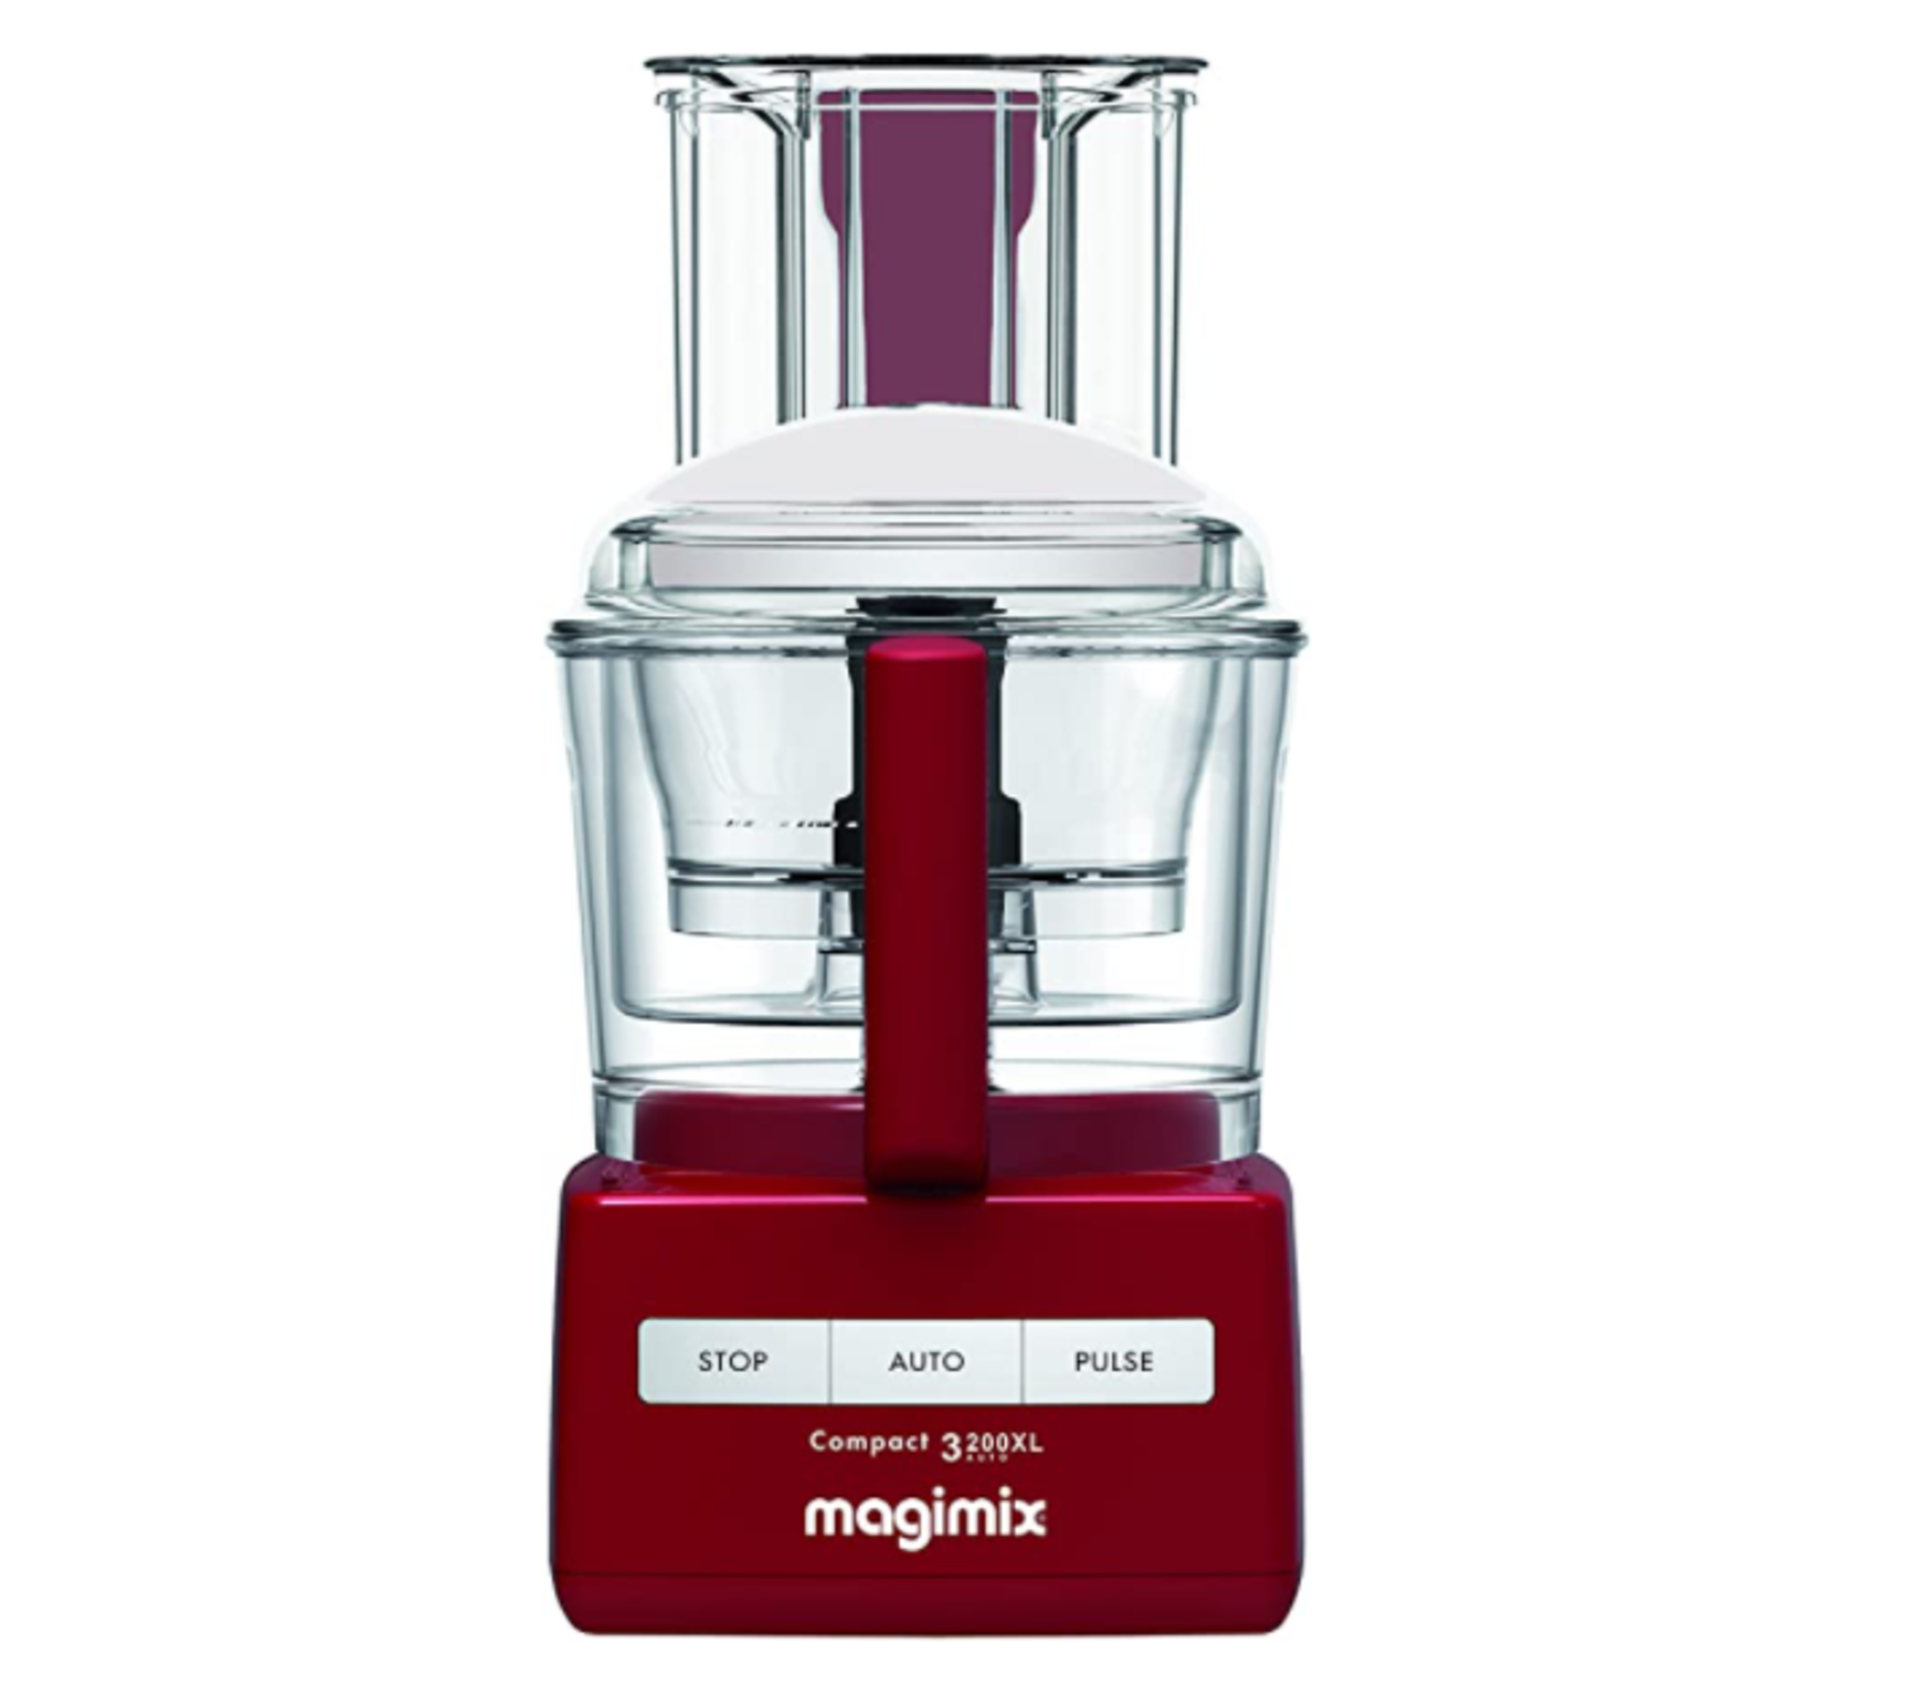 Magimix 18361 3200XL Food Processor, BPA-Free